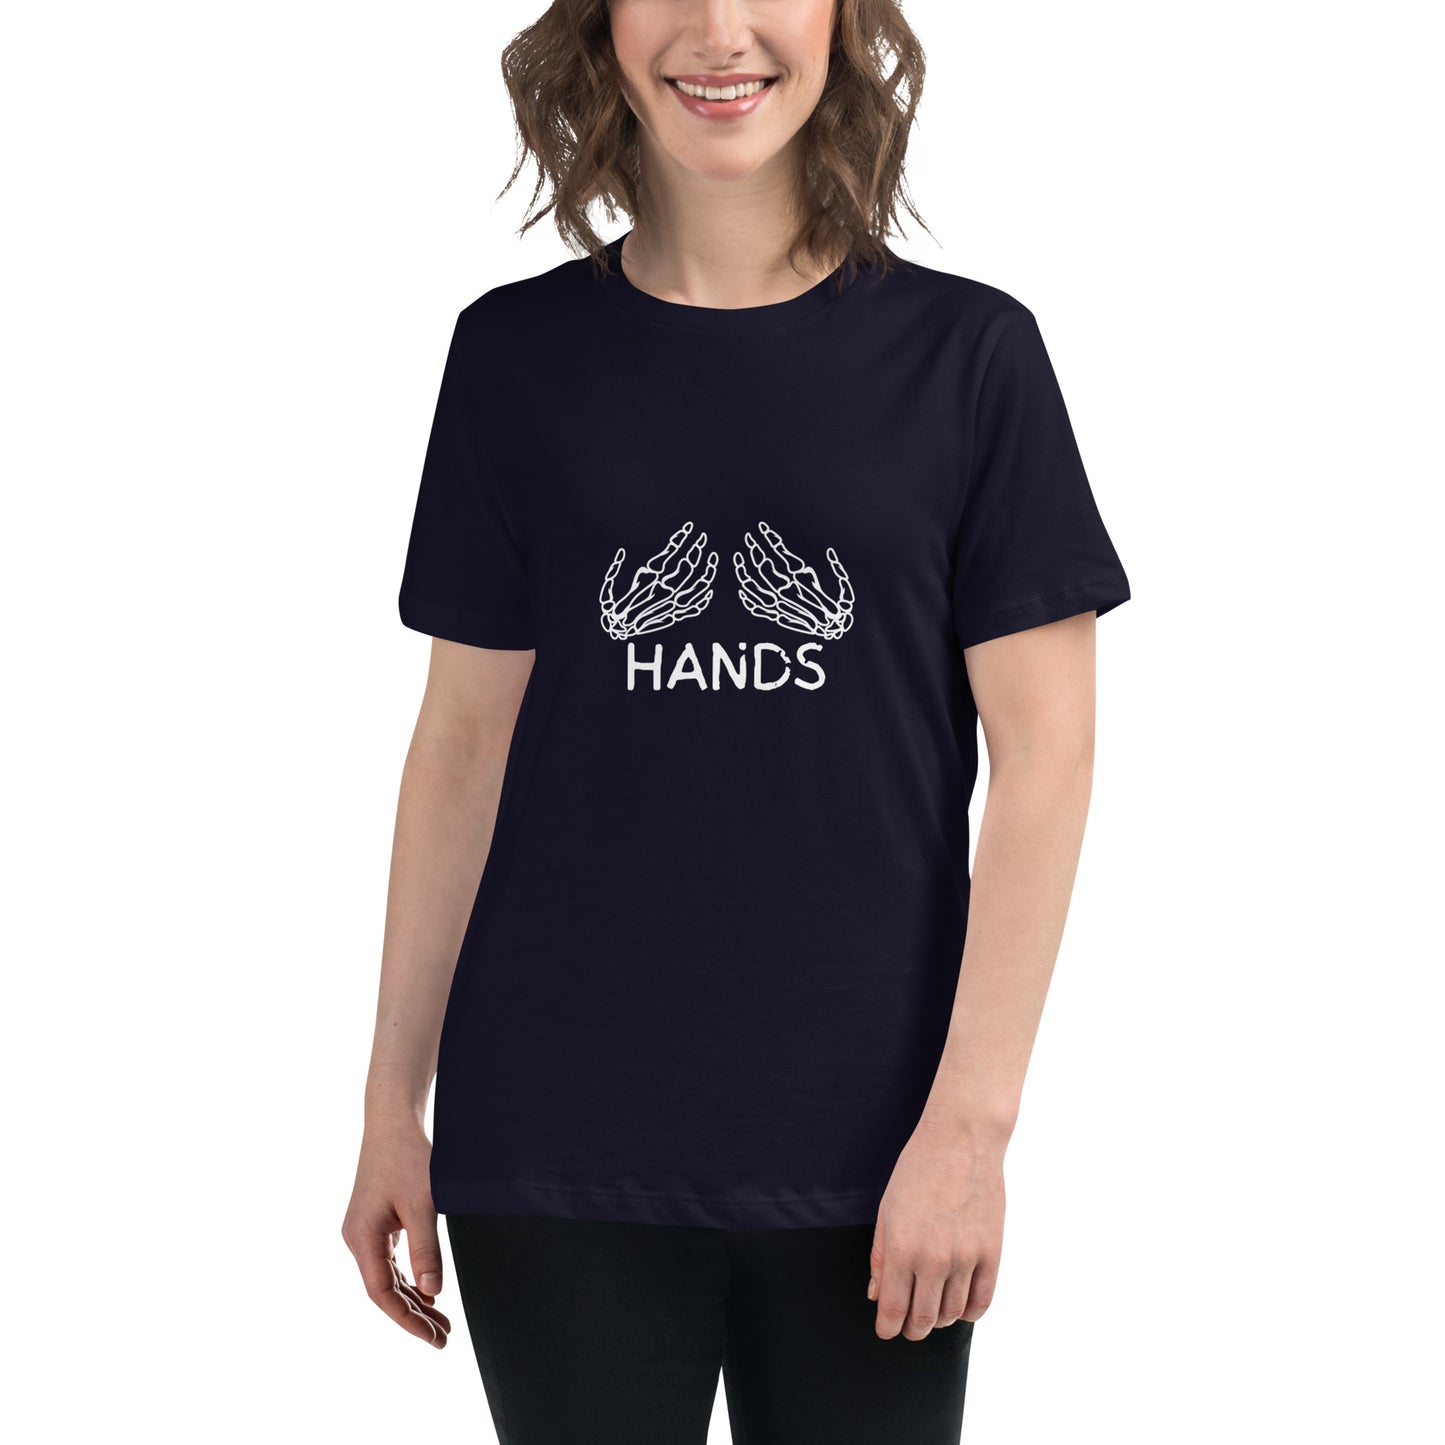 HANDS BLACK Women's Relaxed T-Shirt